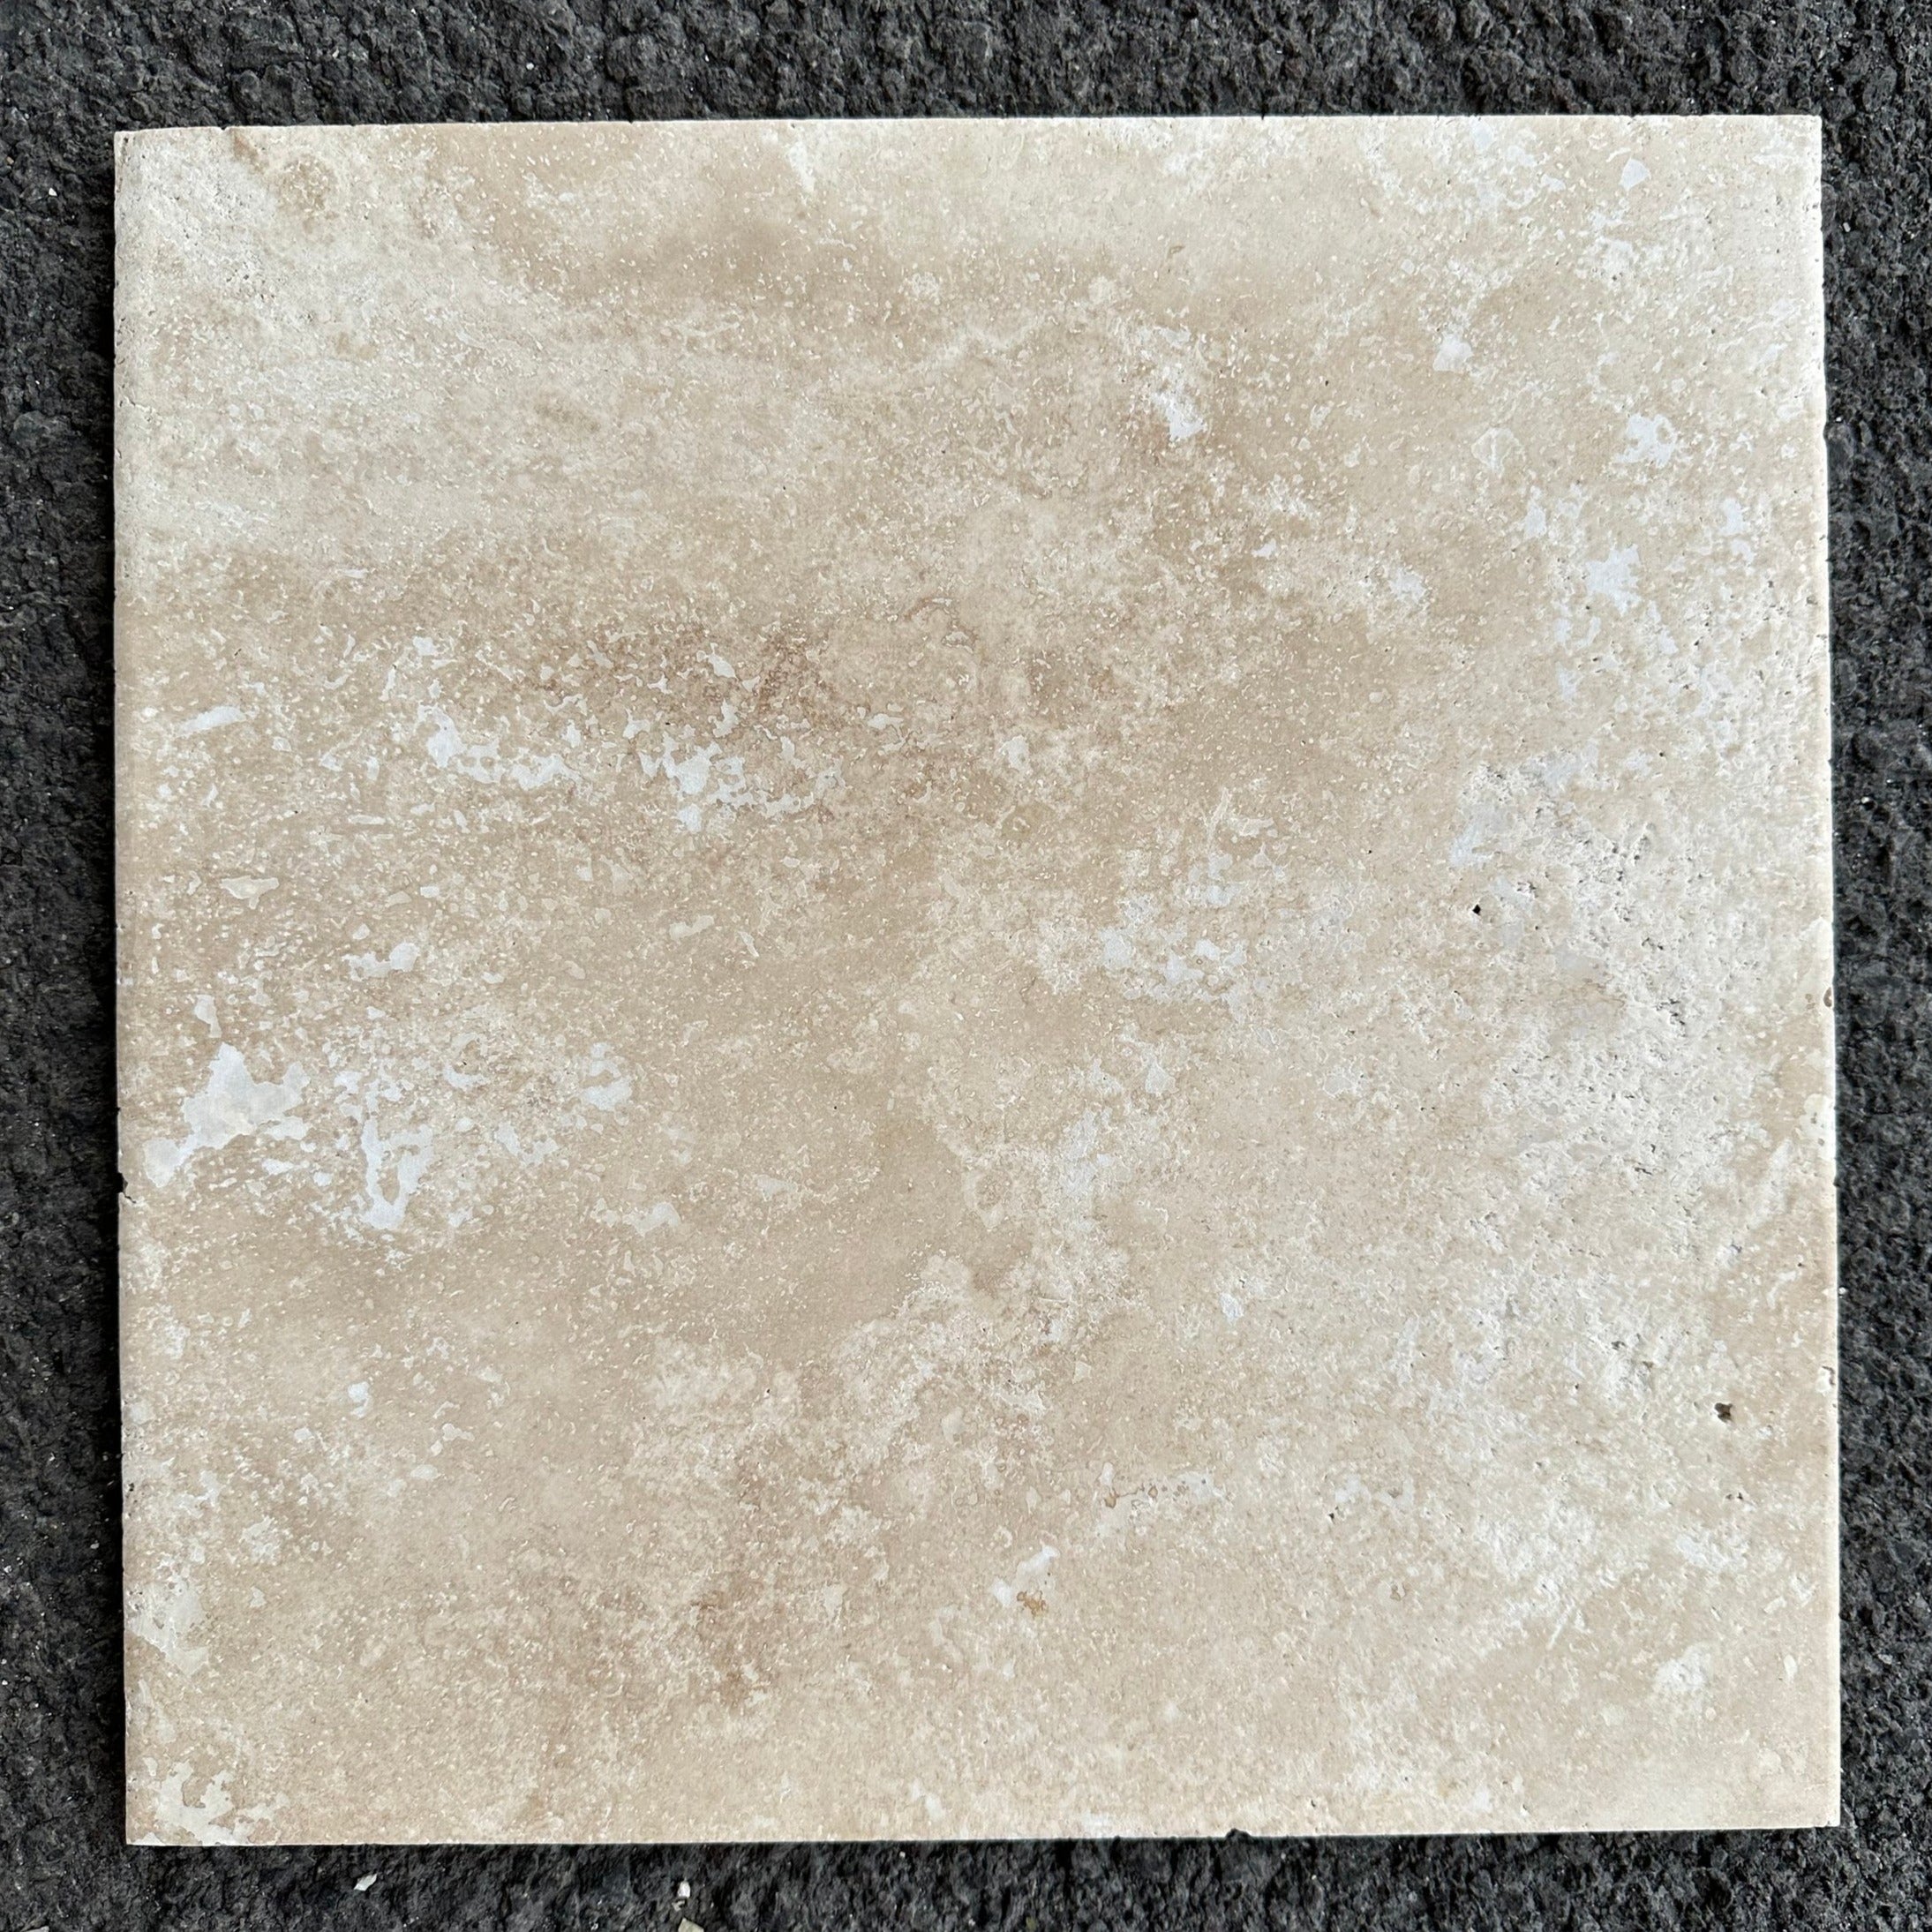 Travertine-Tile-Flooring-DARK WALNUT Travertine honed/filled tile 12"x12"- Stone Supplier - Rocks in Stock